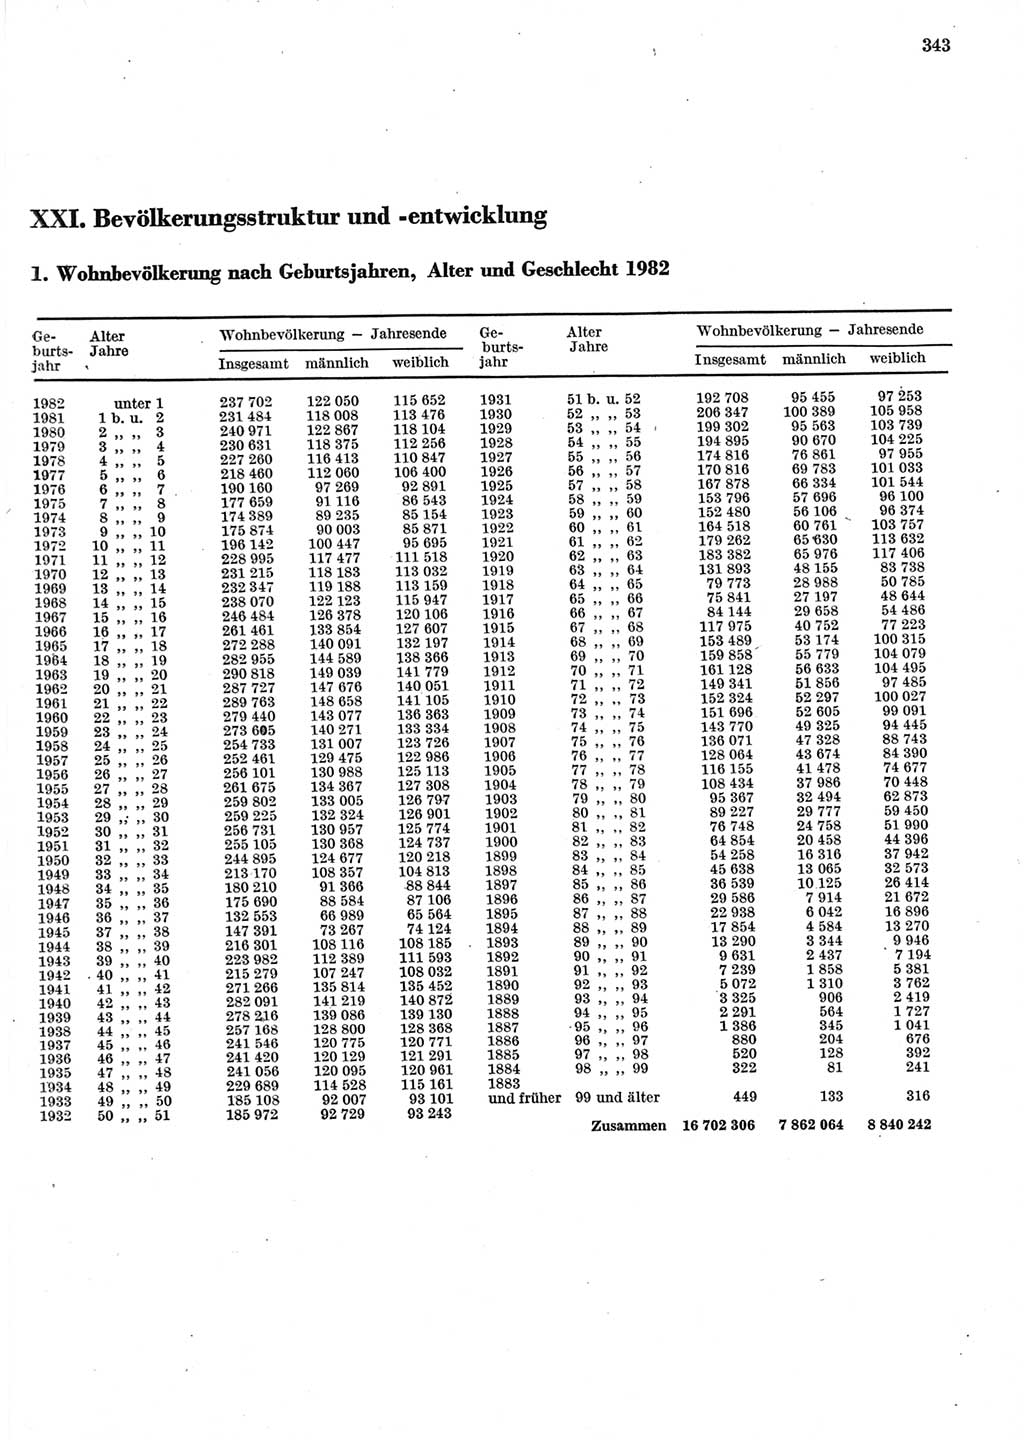 Statistisches Jahrbuch der Deutschen Demokratischen Republik (DDR) 1983, Seite 343 (Stat. Jb. DDR 1983, S. 343)